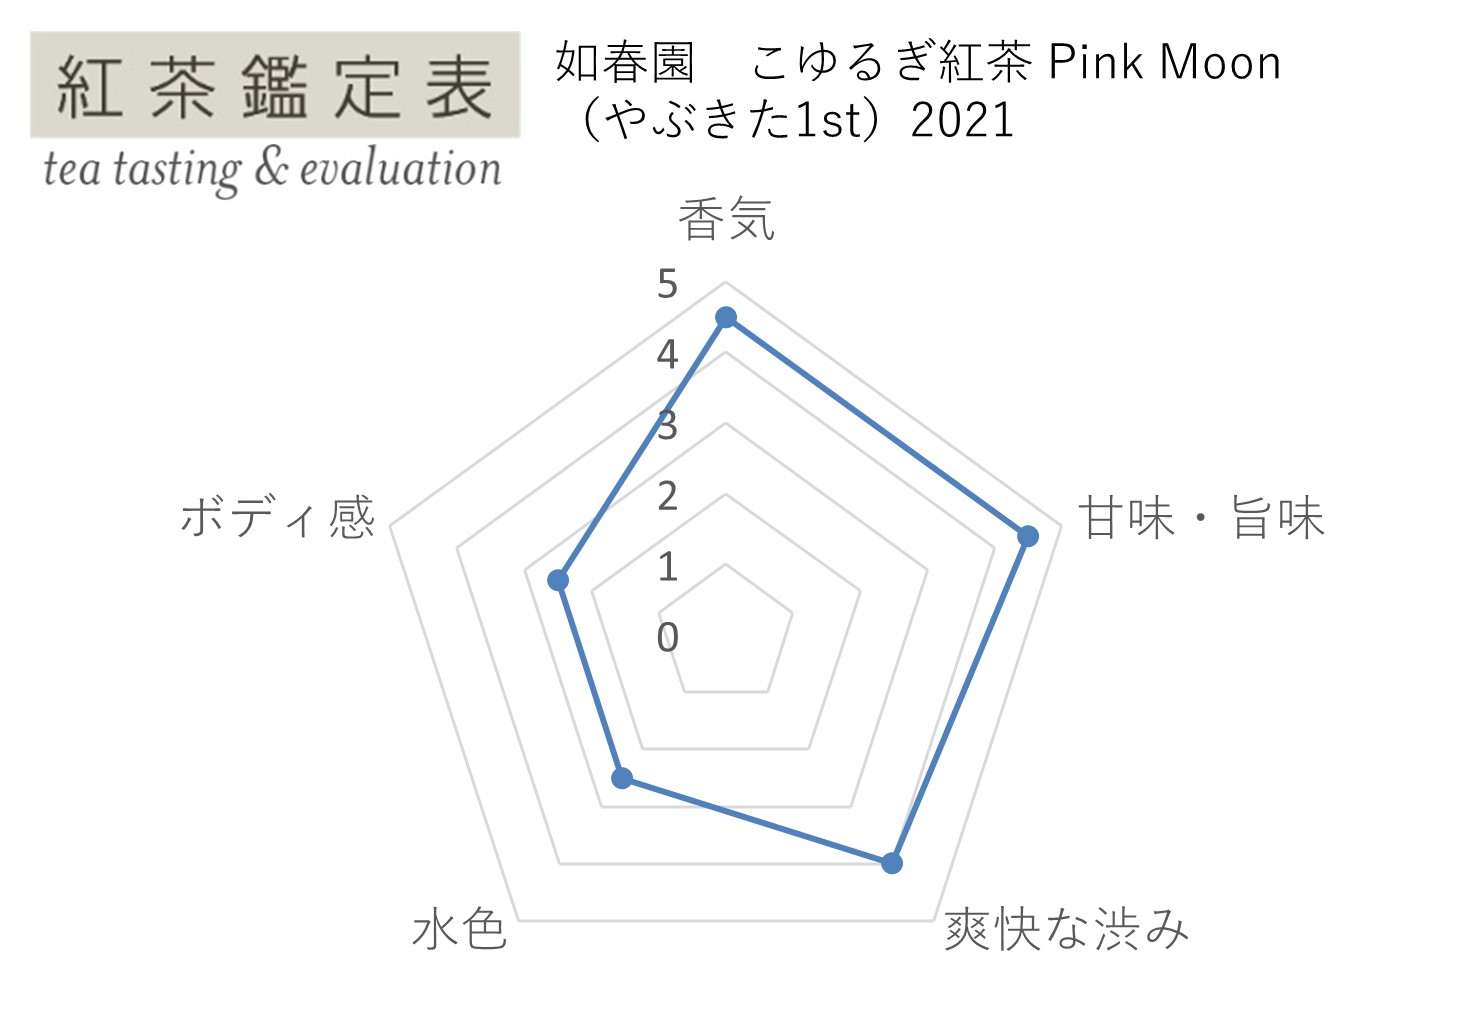 【紅茶鑑定表】如春園 こゆるぎ紅茶1st Pink Moon